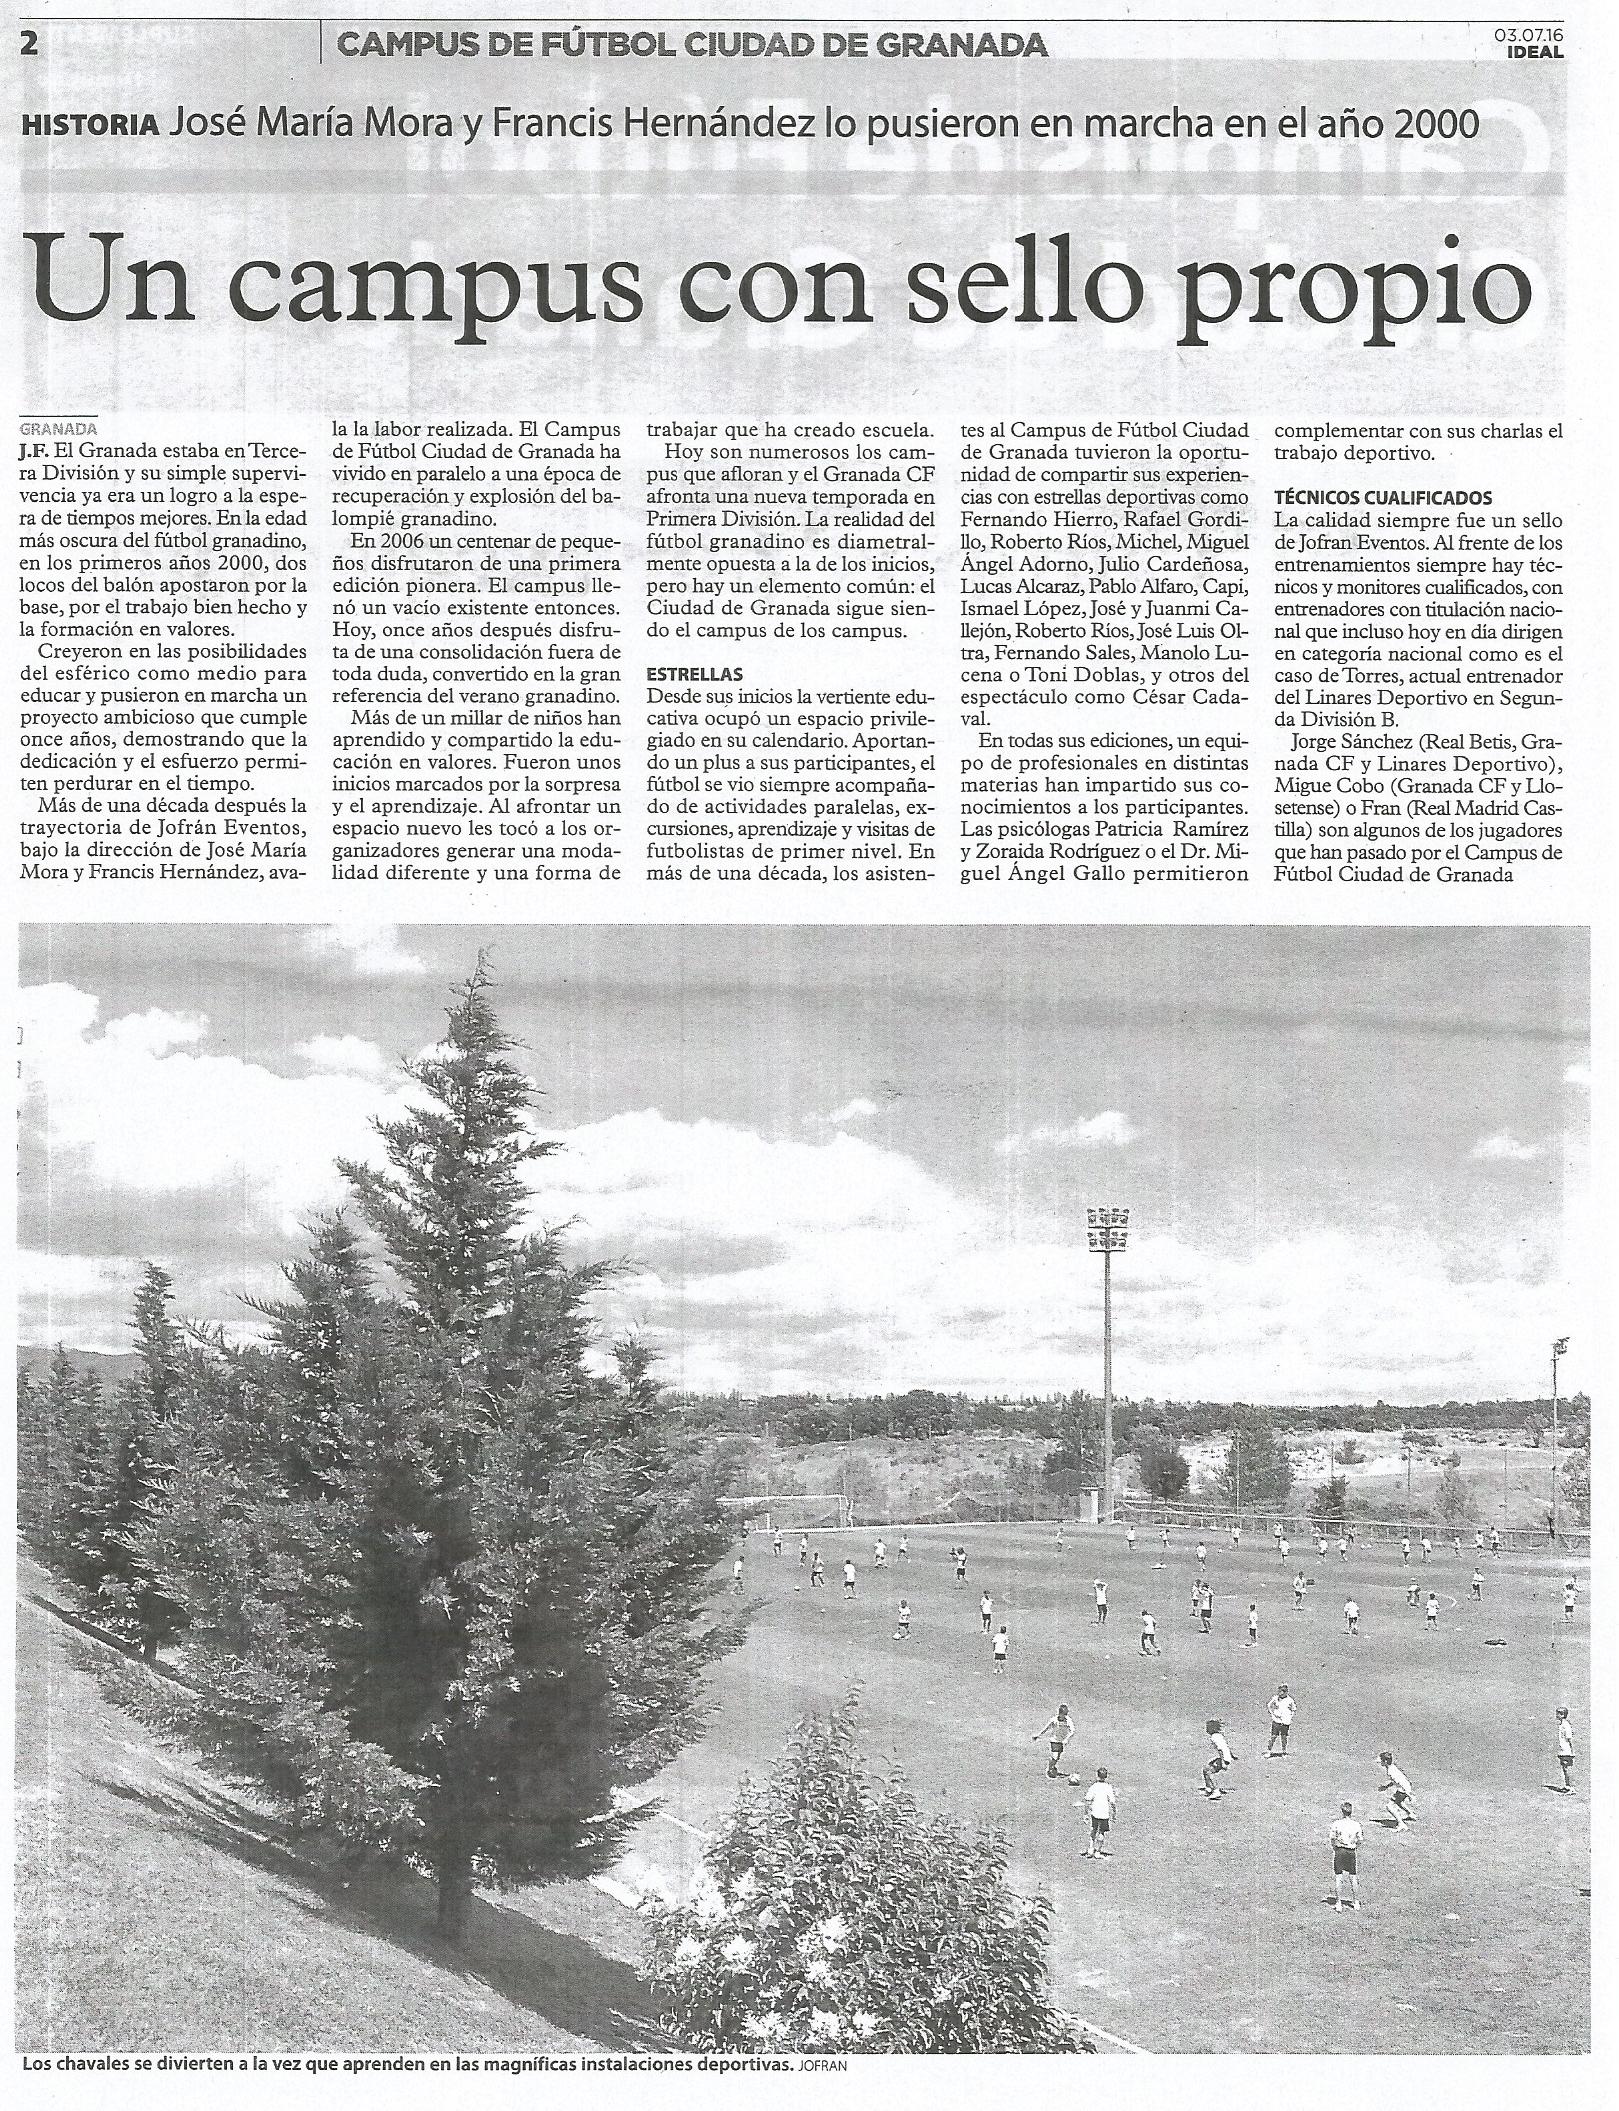 Campus de Fútbol Ciudad de Granada 2